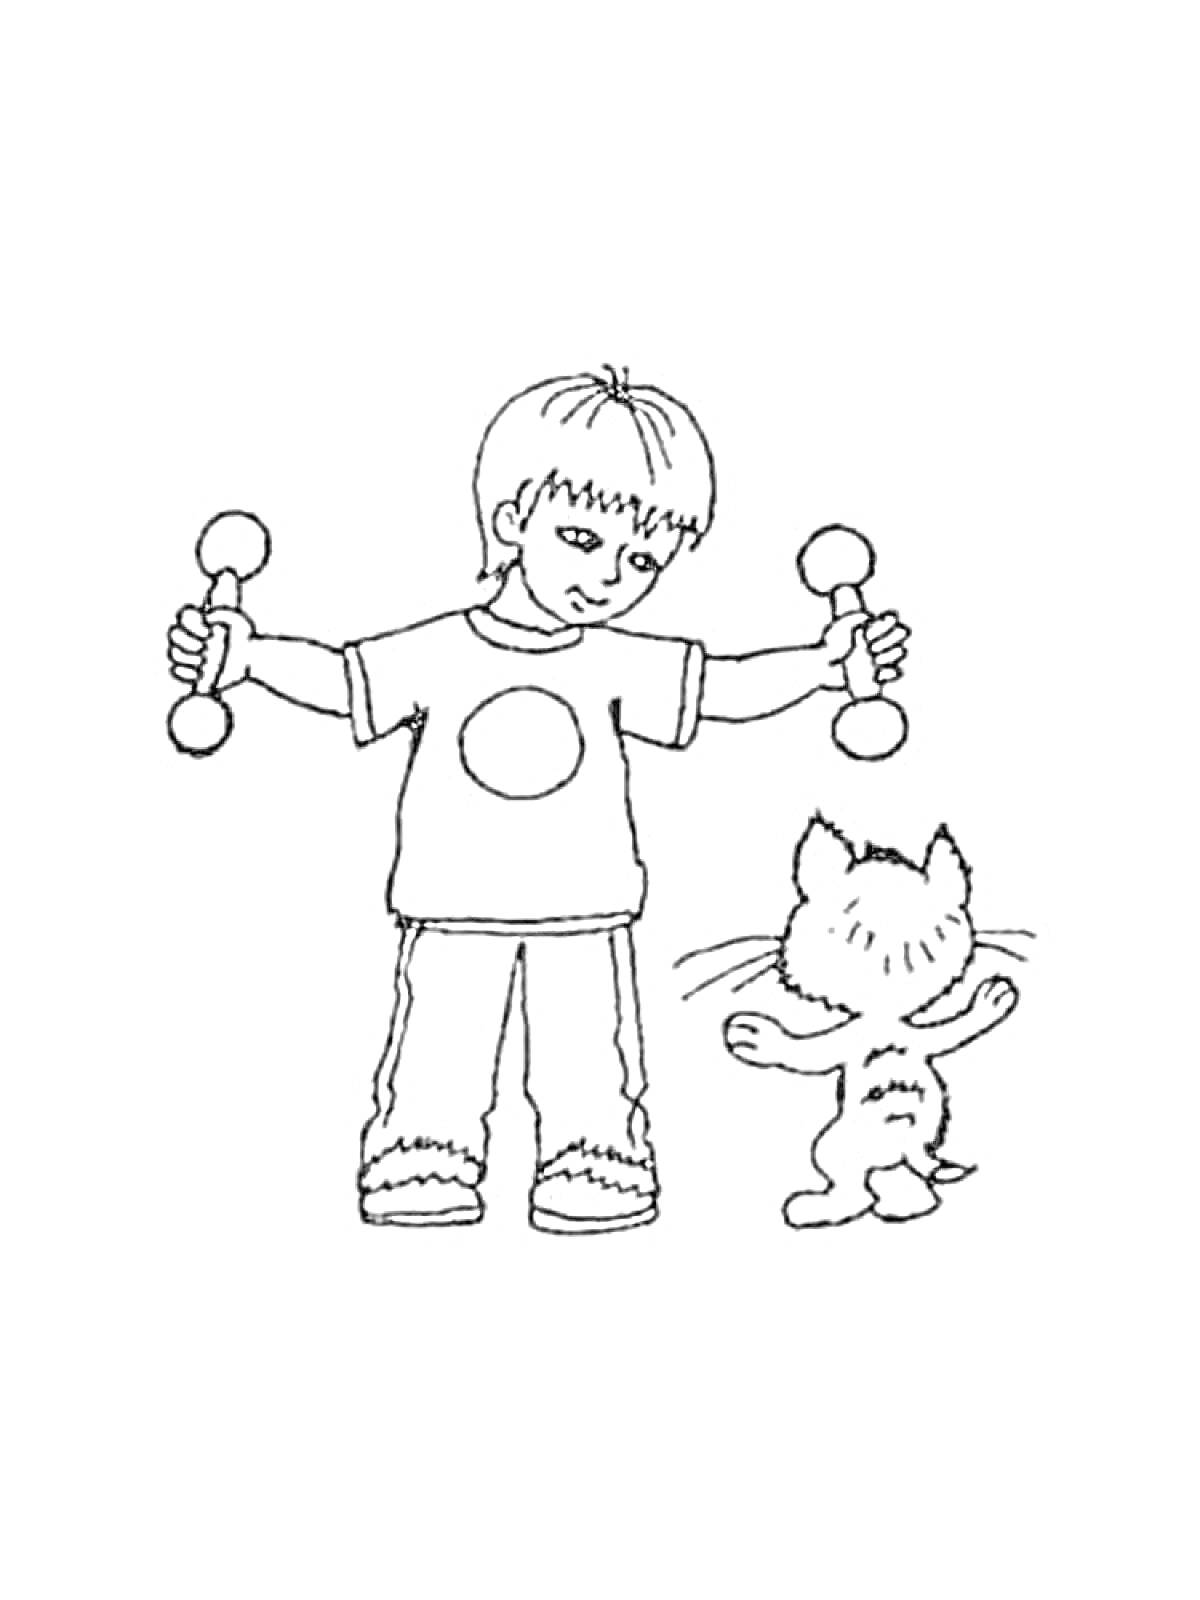 Мальчик с гантелями и котенок, выполняющие зарядку